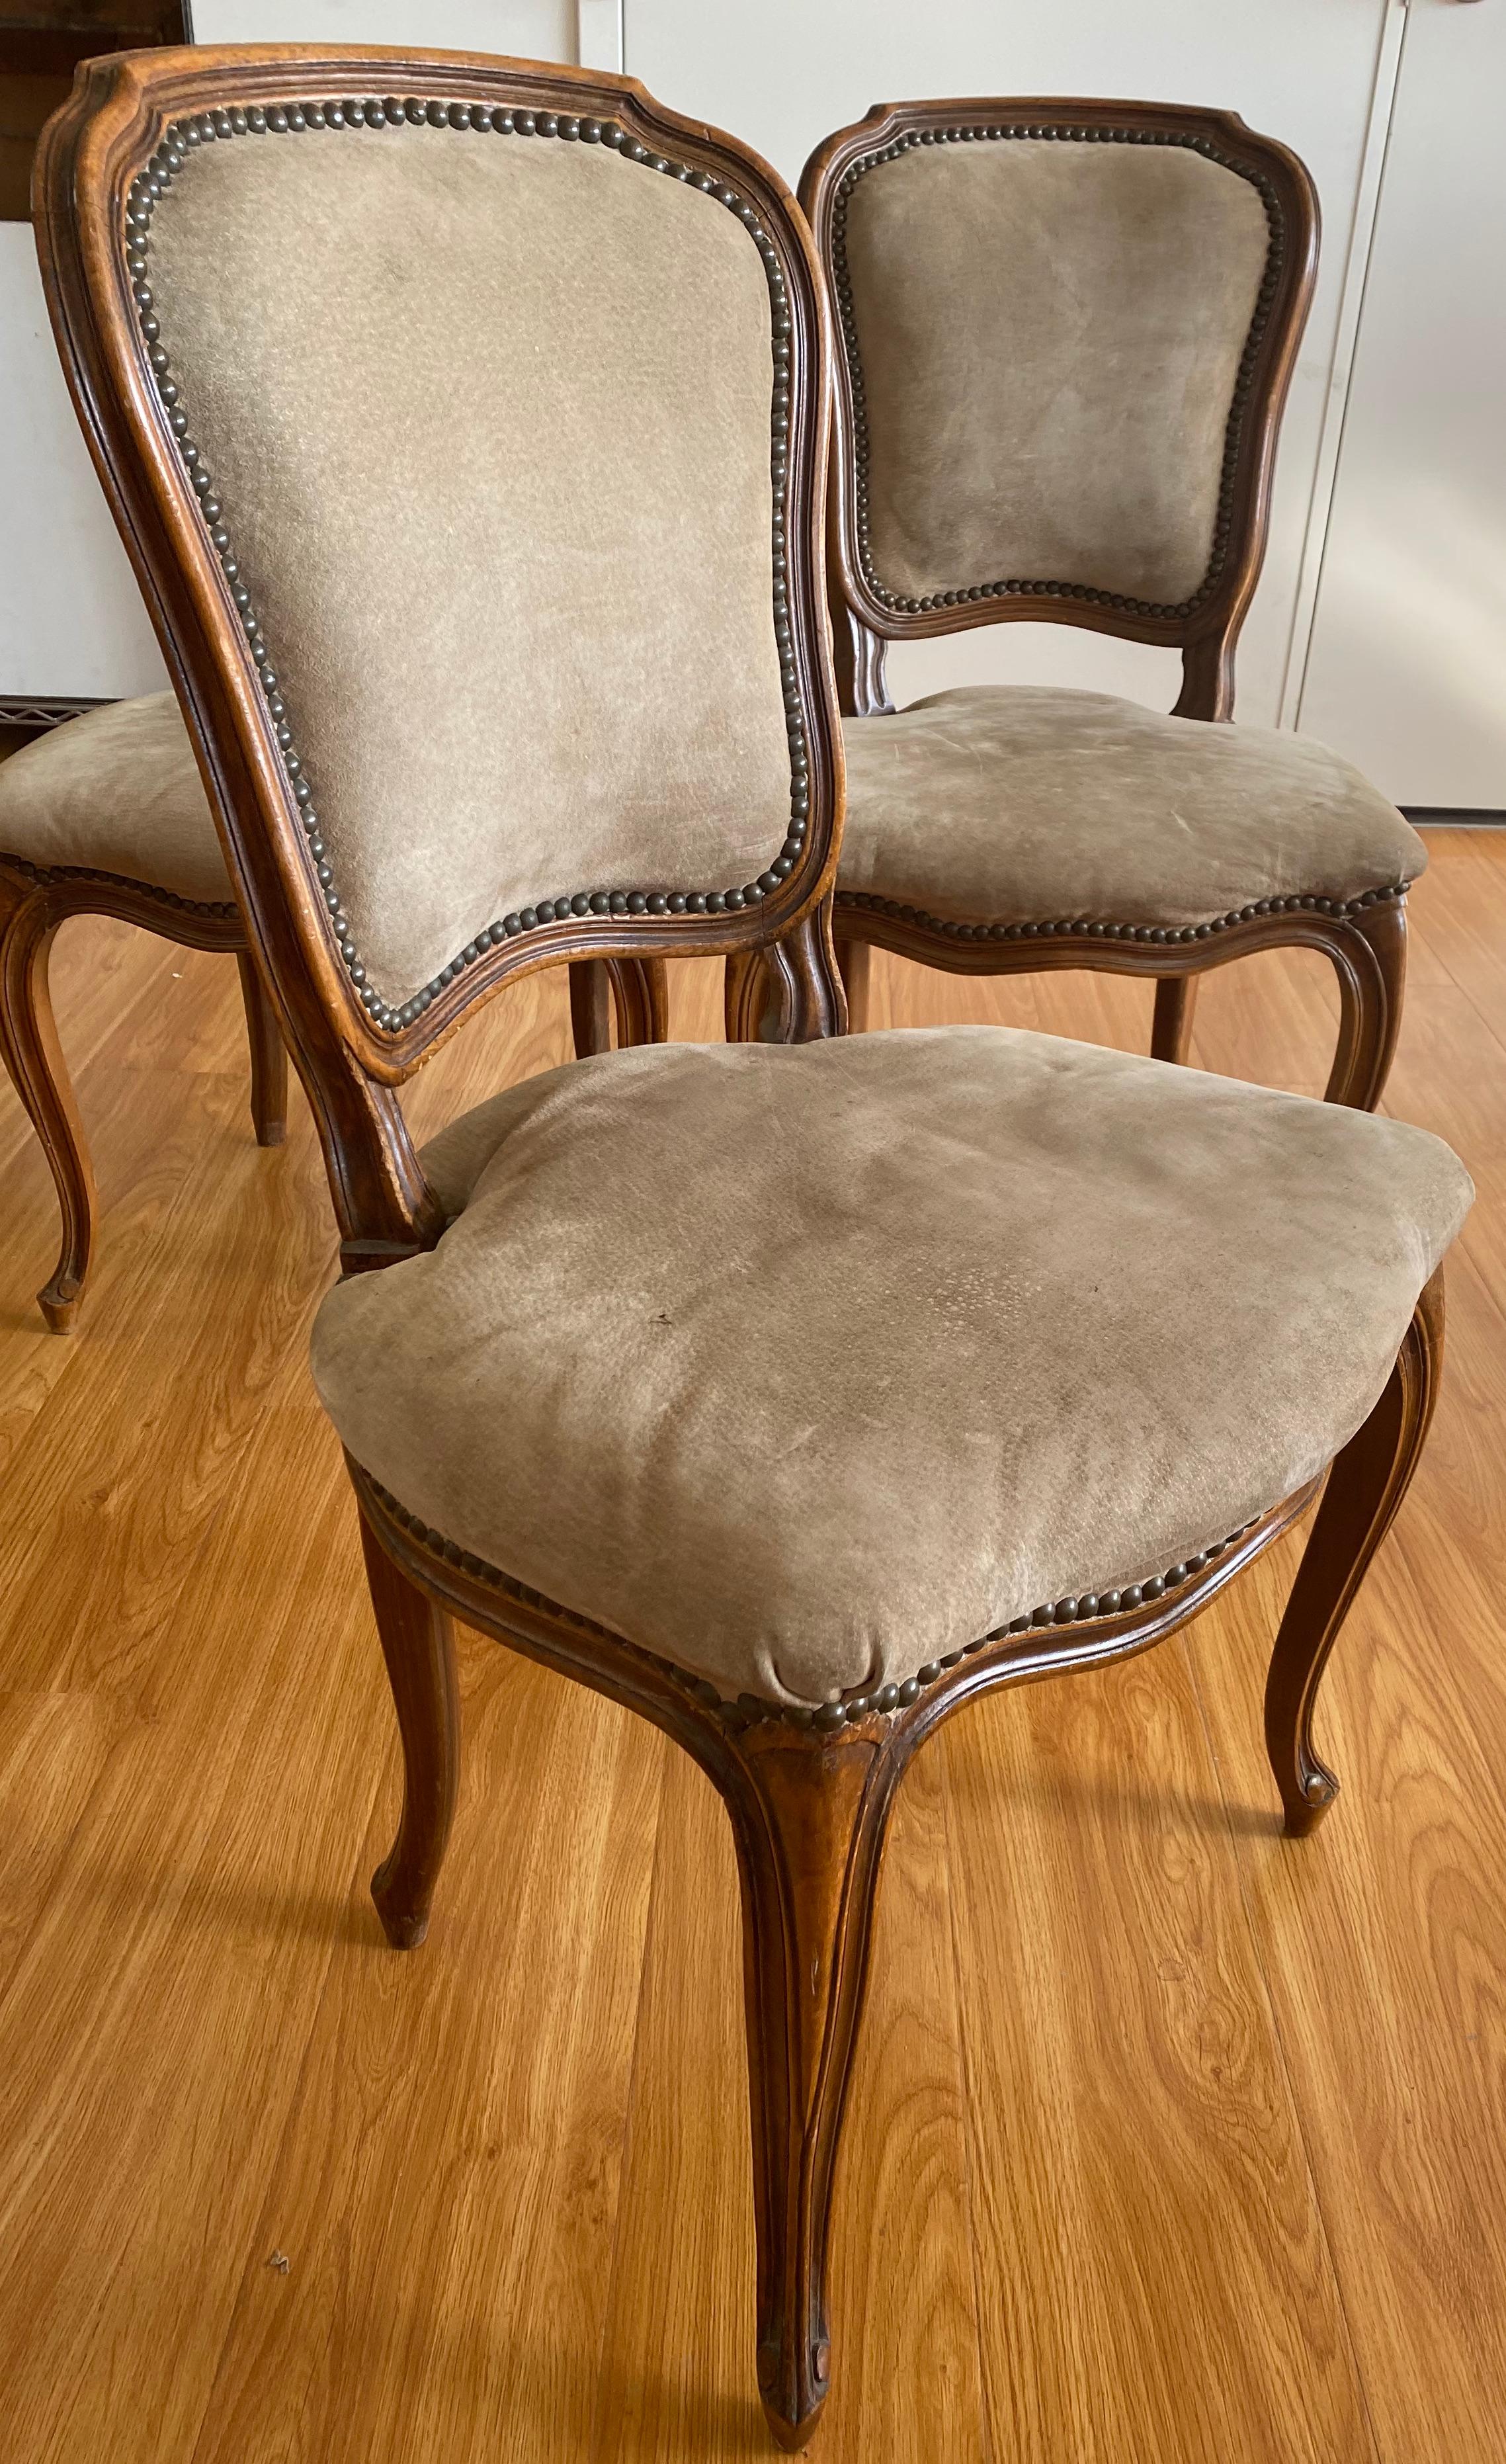 Drei geschnitzte französische Beistellstühle aus Nussbaumholz, Anfang des 20. Jahrhunderts, um 1900
Klassische französische Beistellstühle aus Nussbaumholz. Jeder Stuhl ist aus massivem Nussbaumholz geschnitzt. Die Stühle sind derzeit mit einer Art